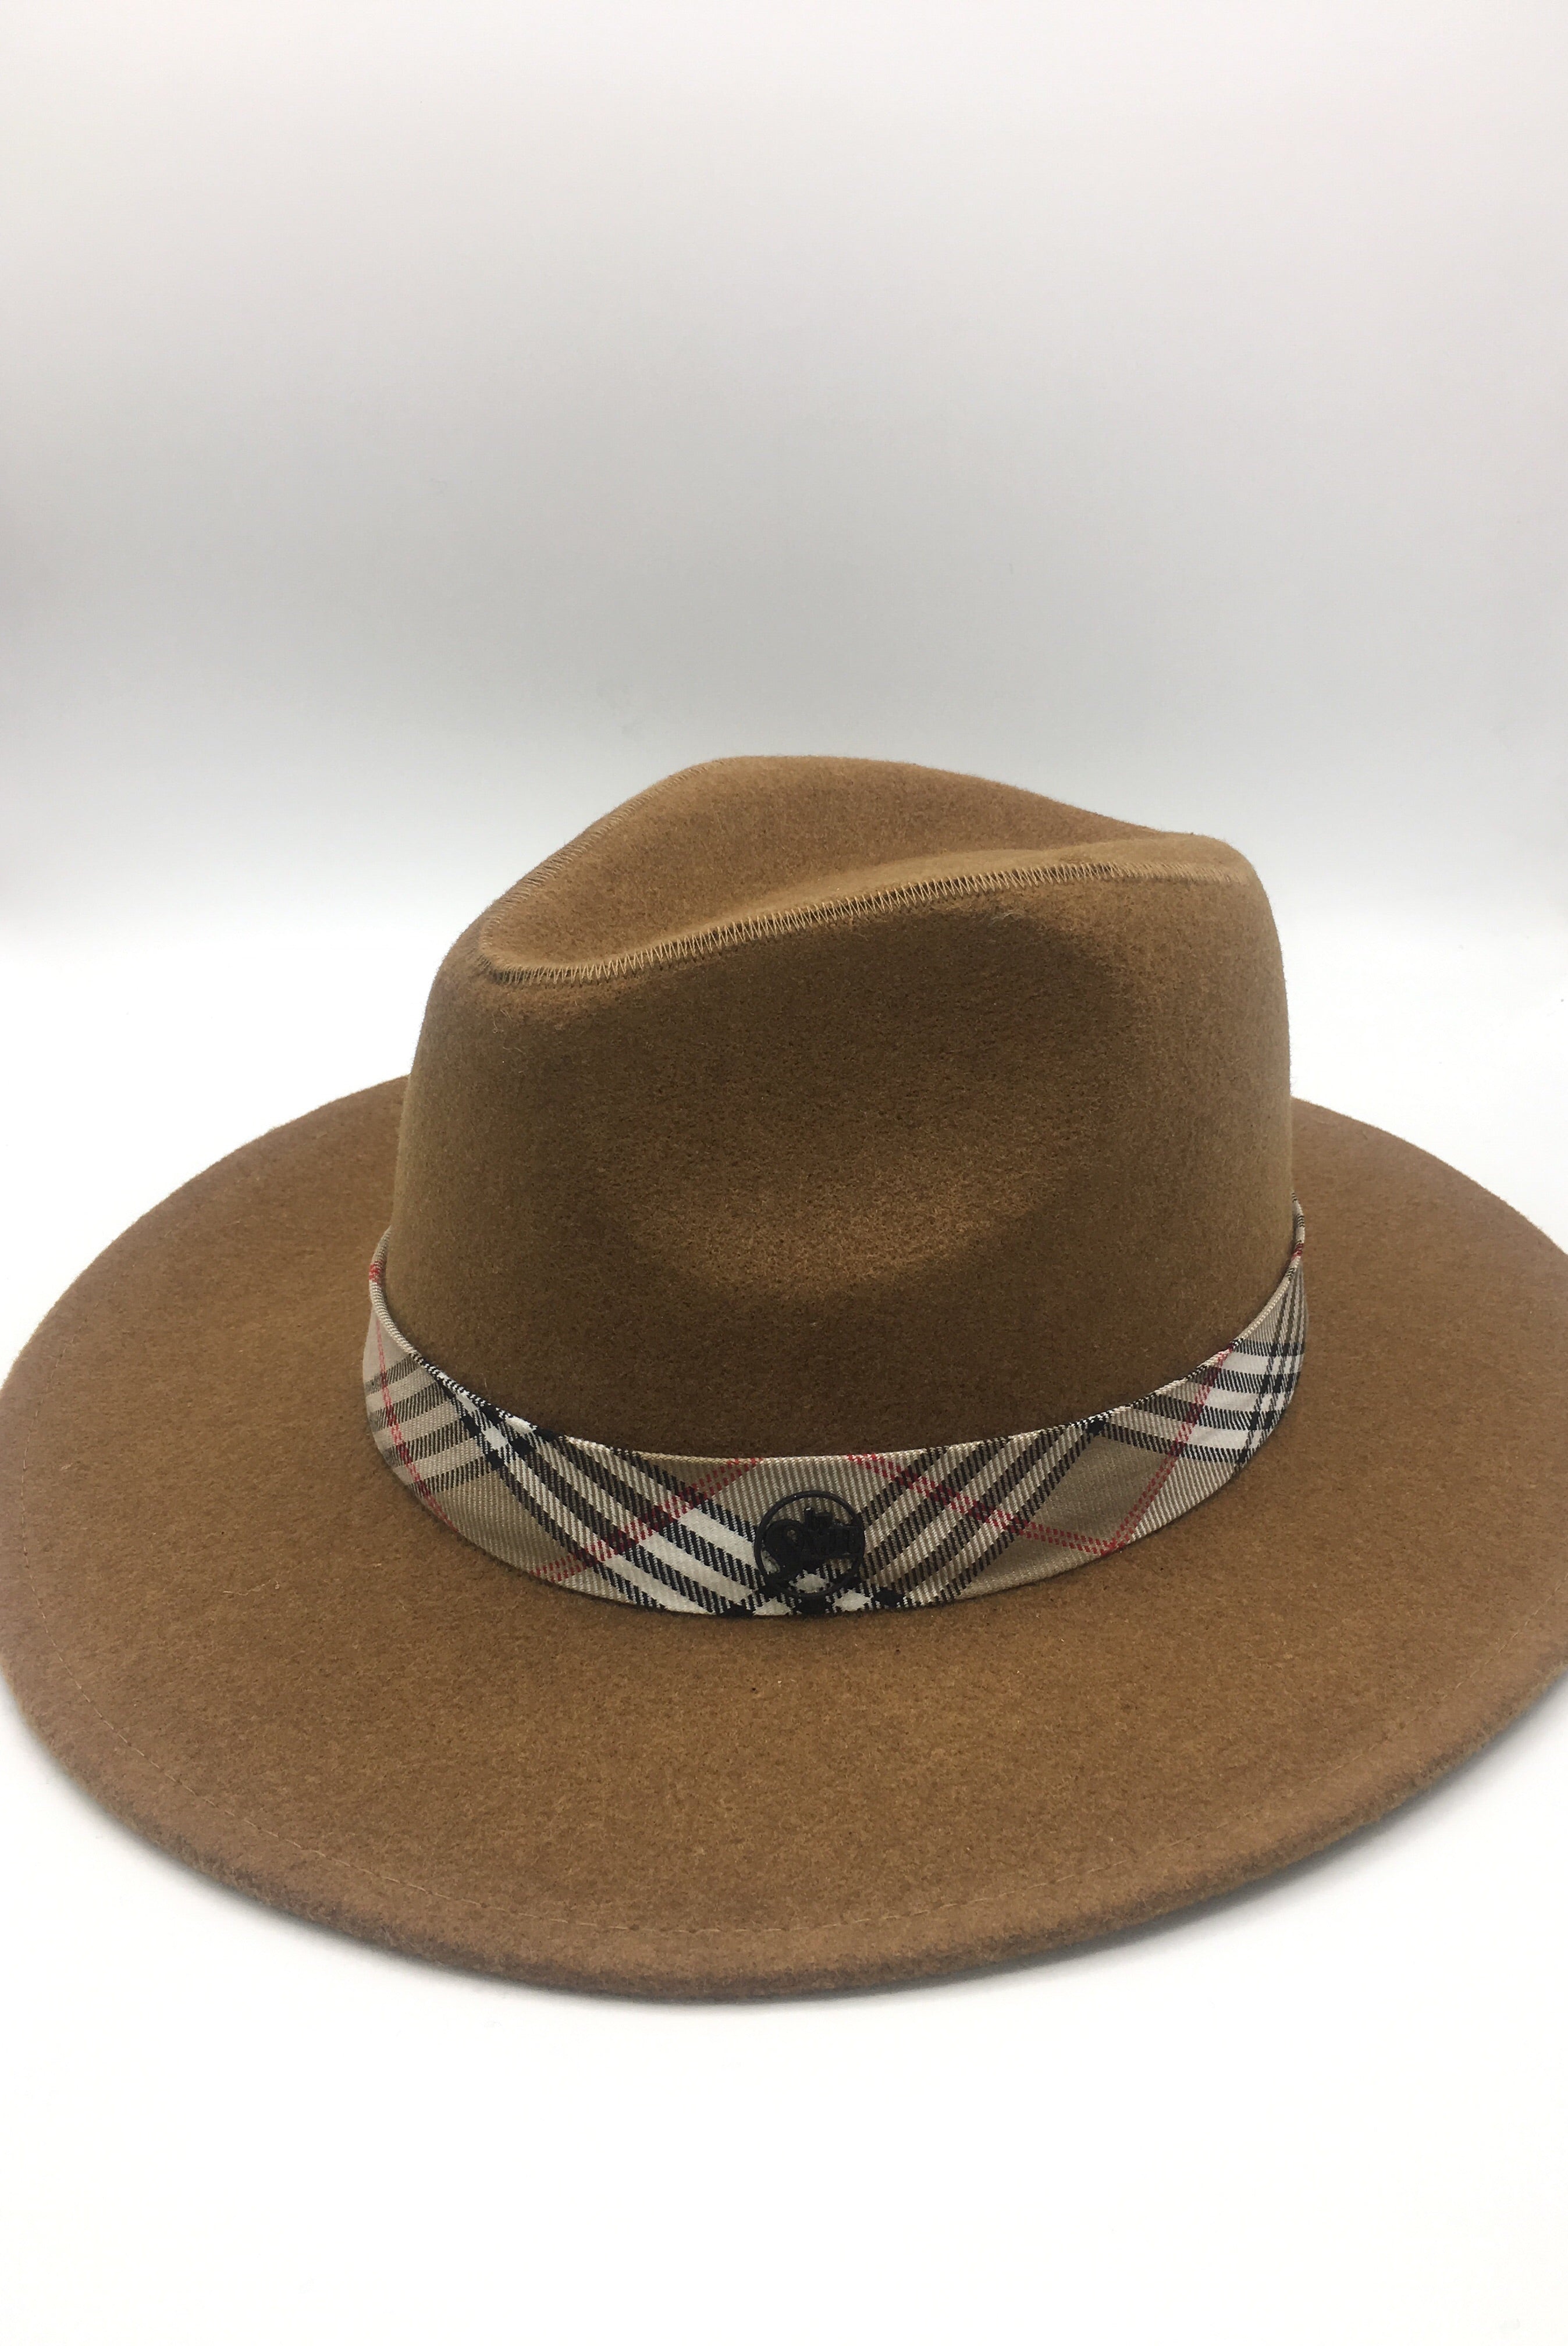 chapeau the voice 2019 chapeau homme. chapeau soprano laine burberry accessoire fedora chapeau By Saje